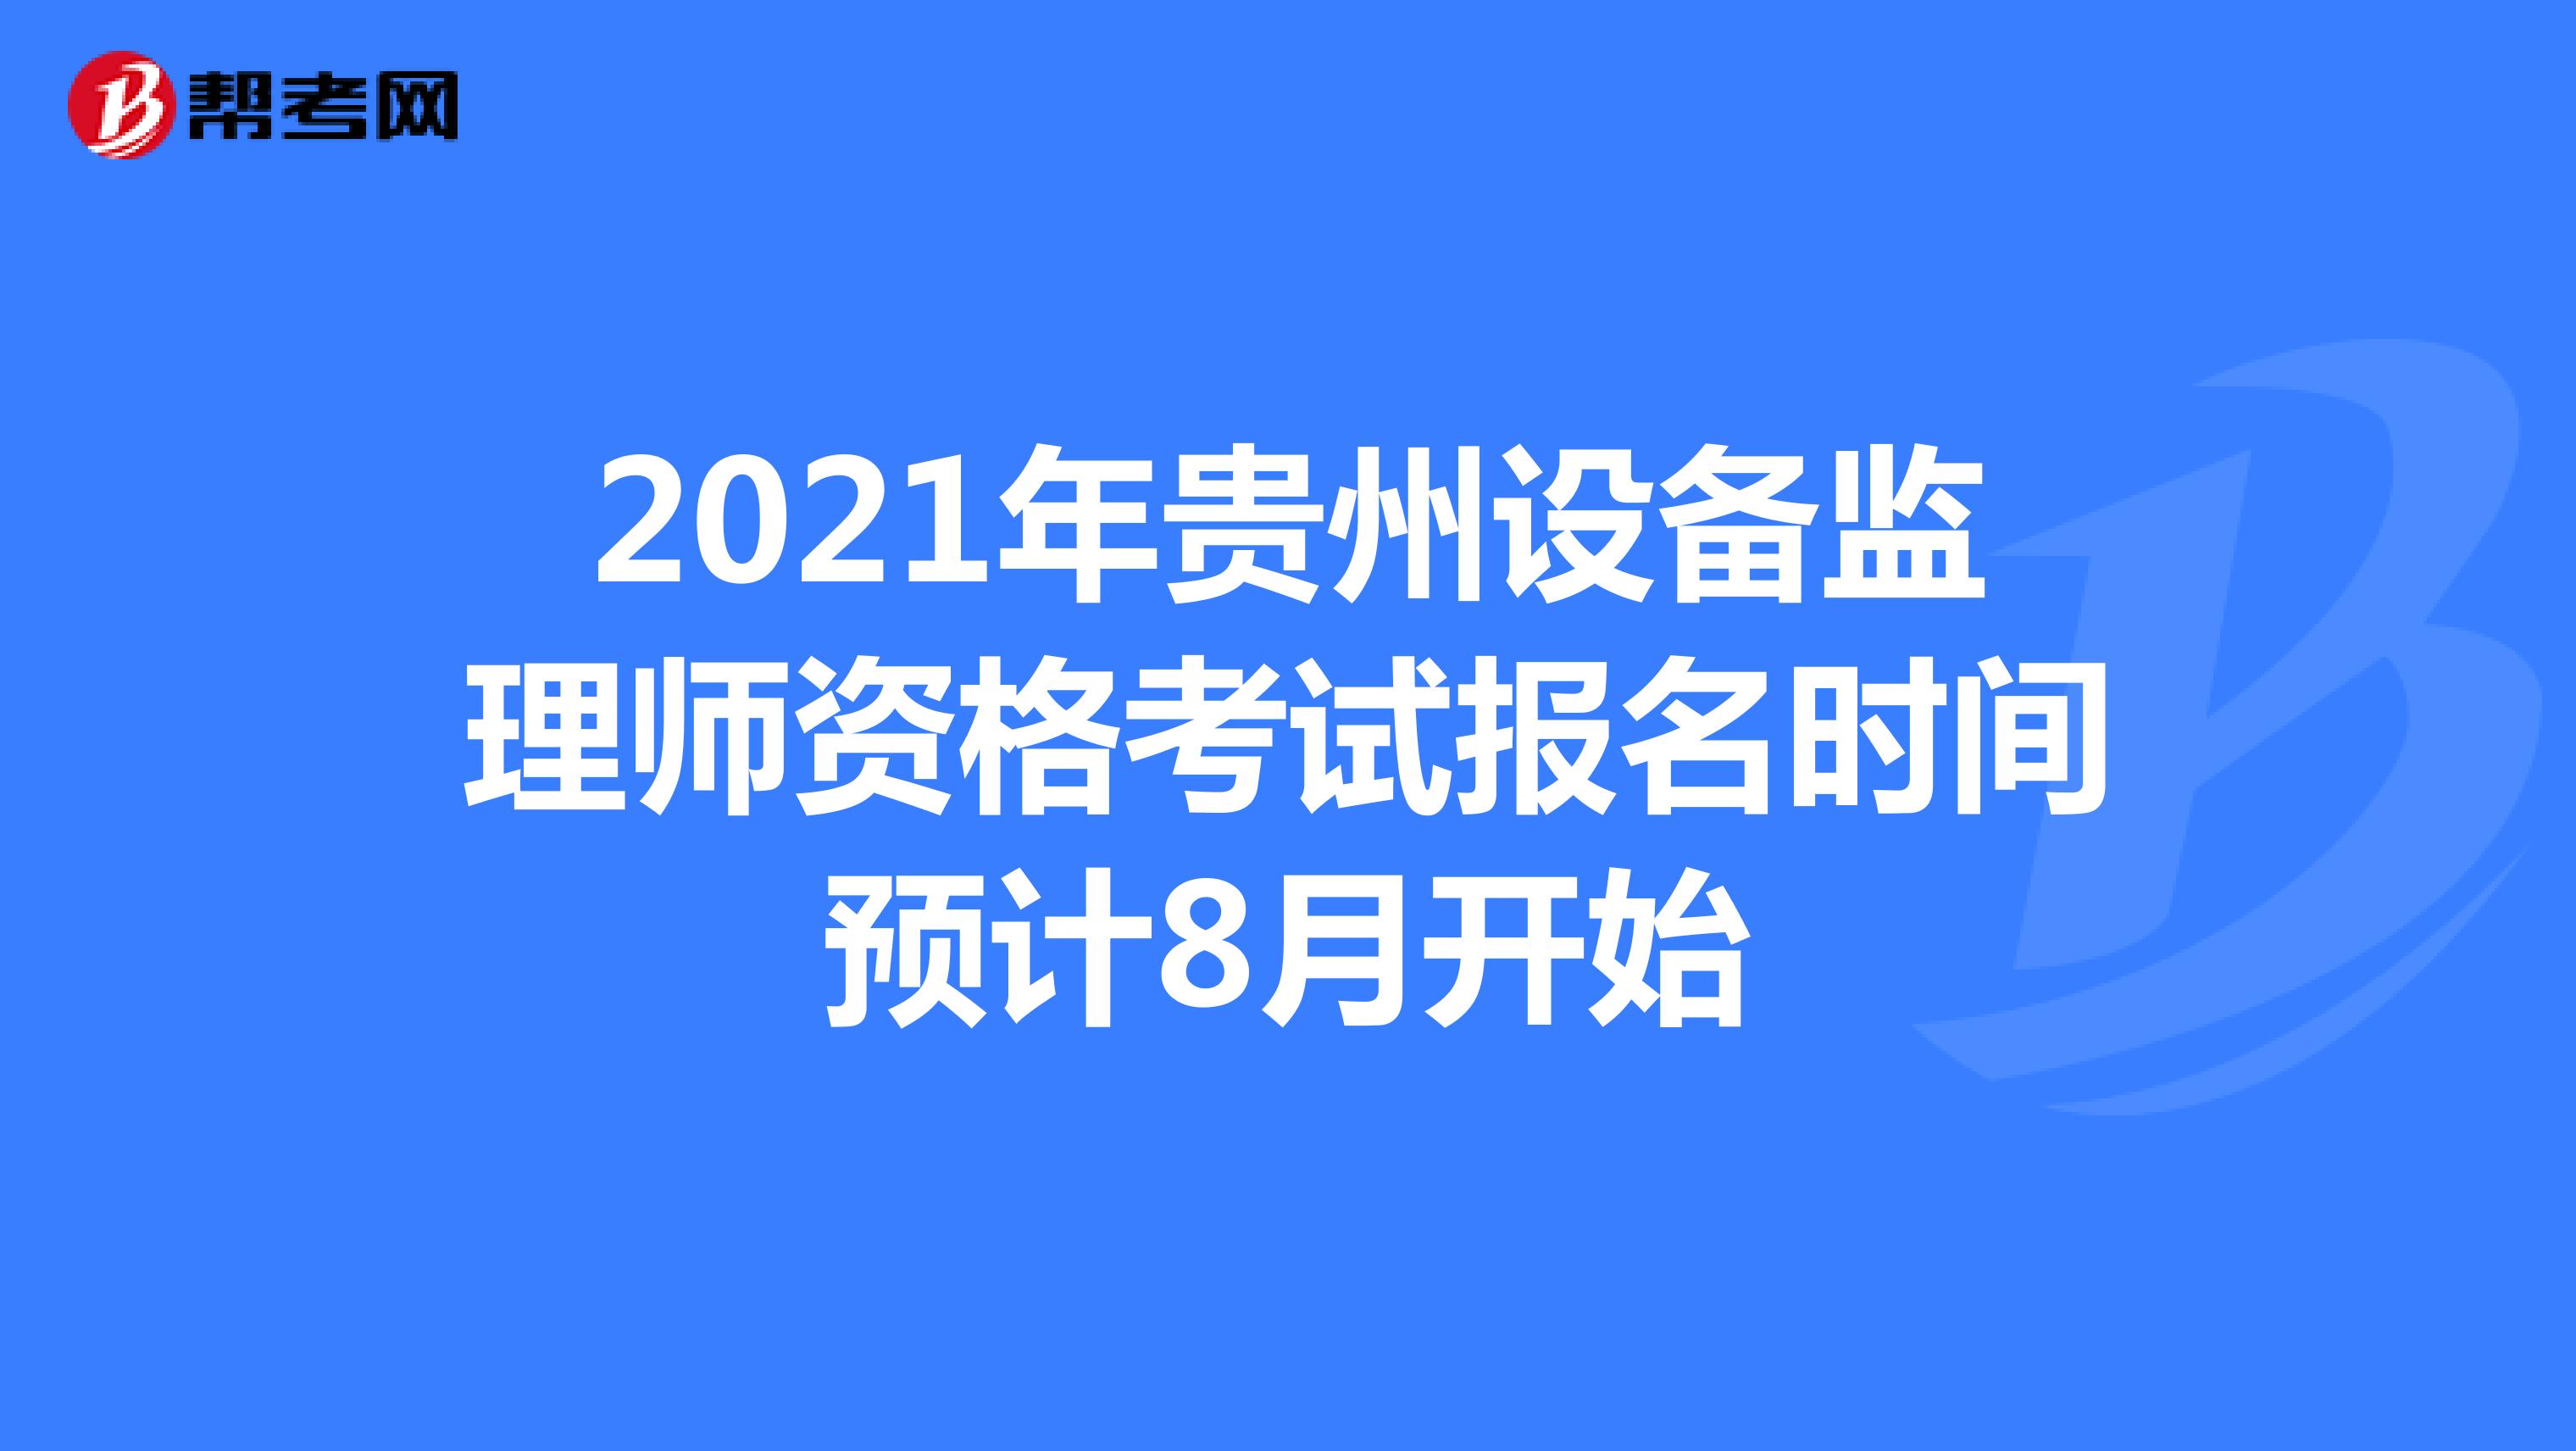 2021年贵州设备监理师资格考试报名时间预计8月开始